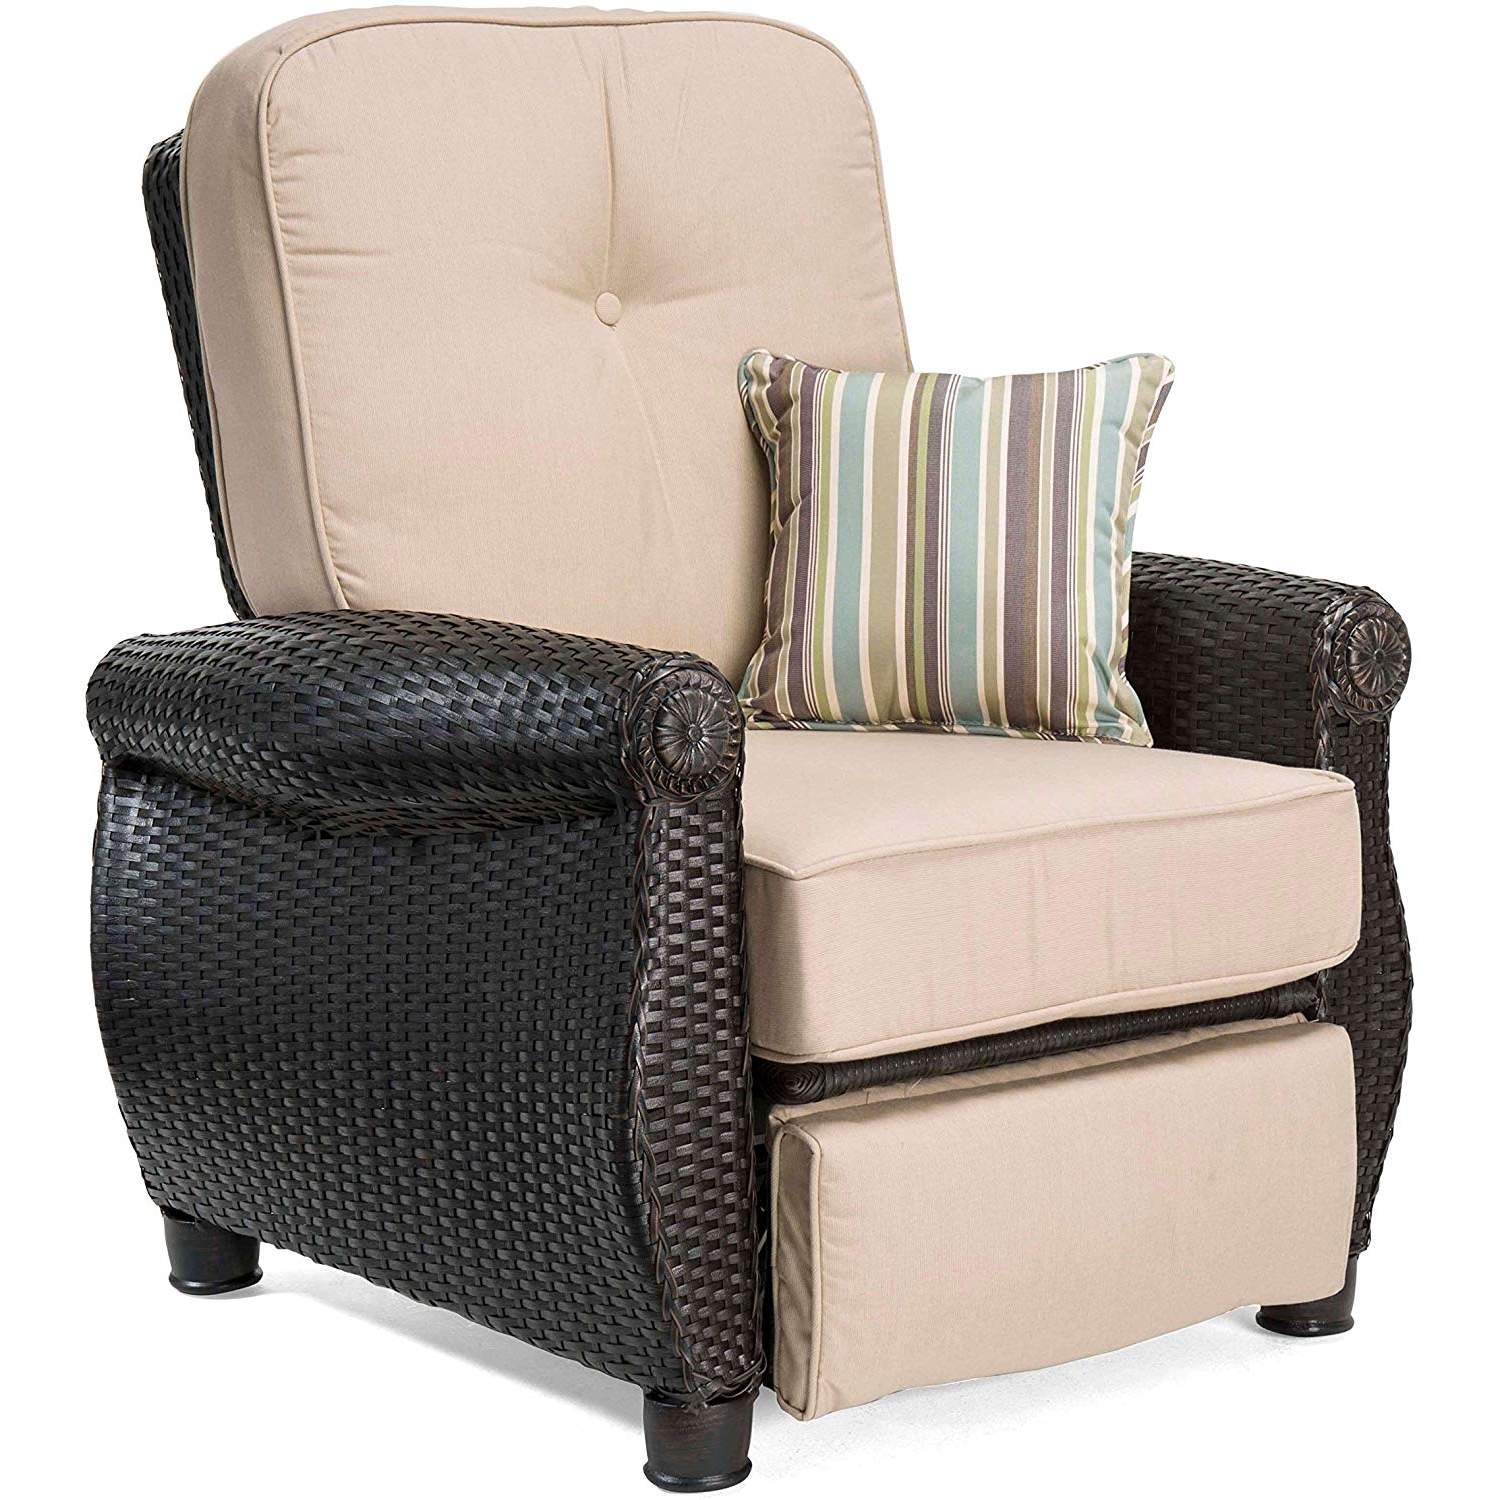 La-Z-Boy Outdoor Breckenridge Resin Wicker Patio Furniture Recliner